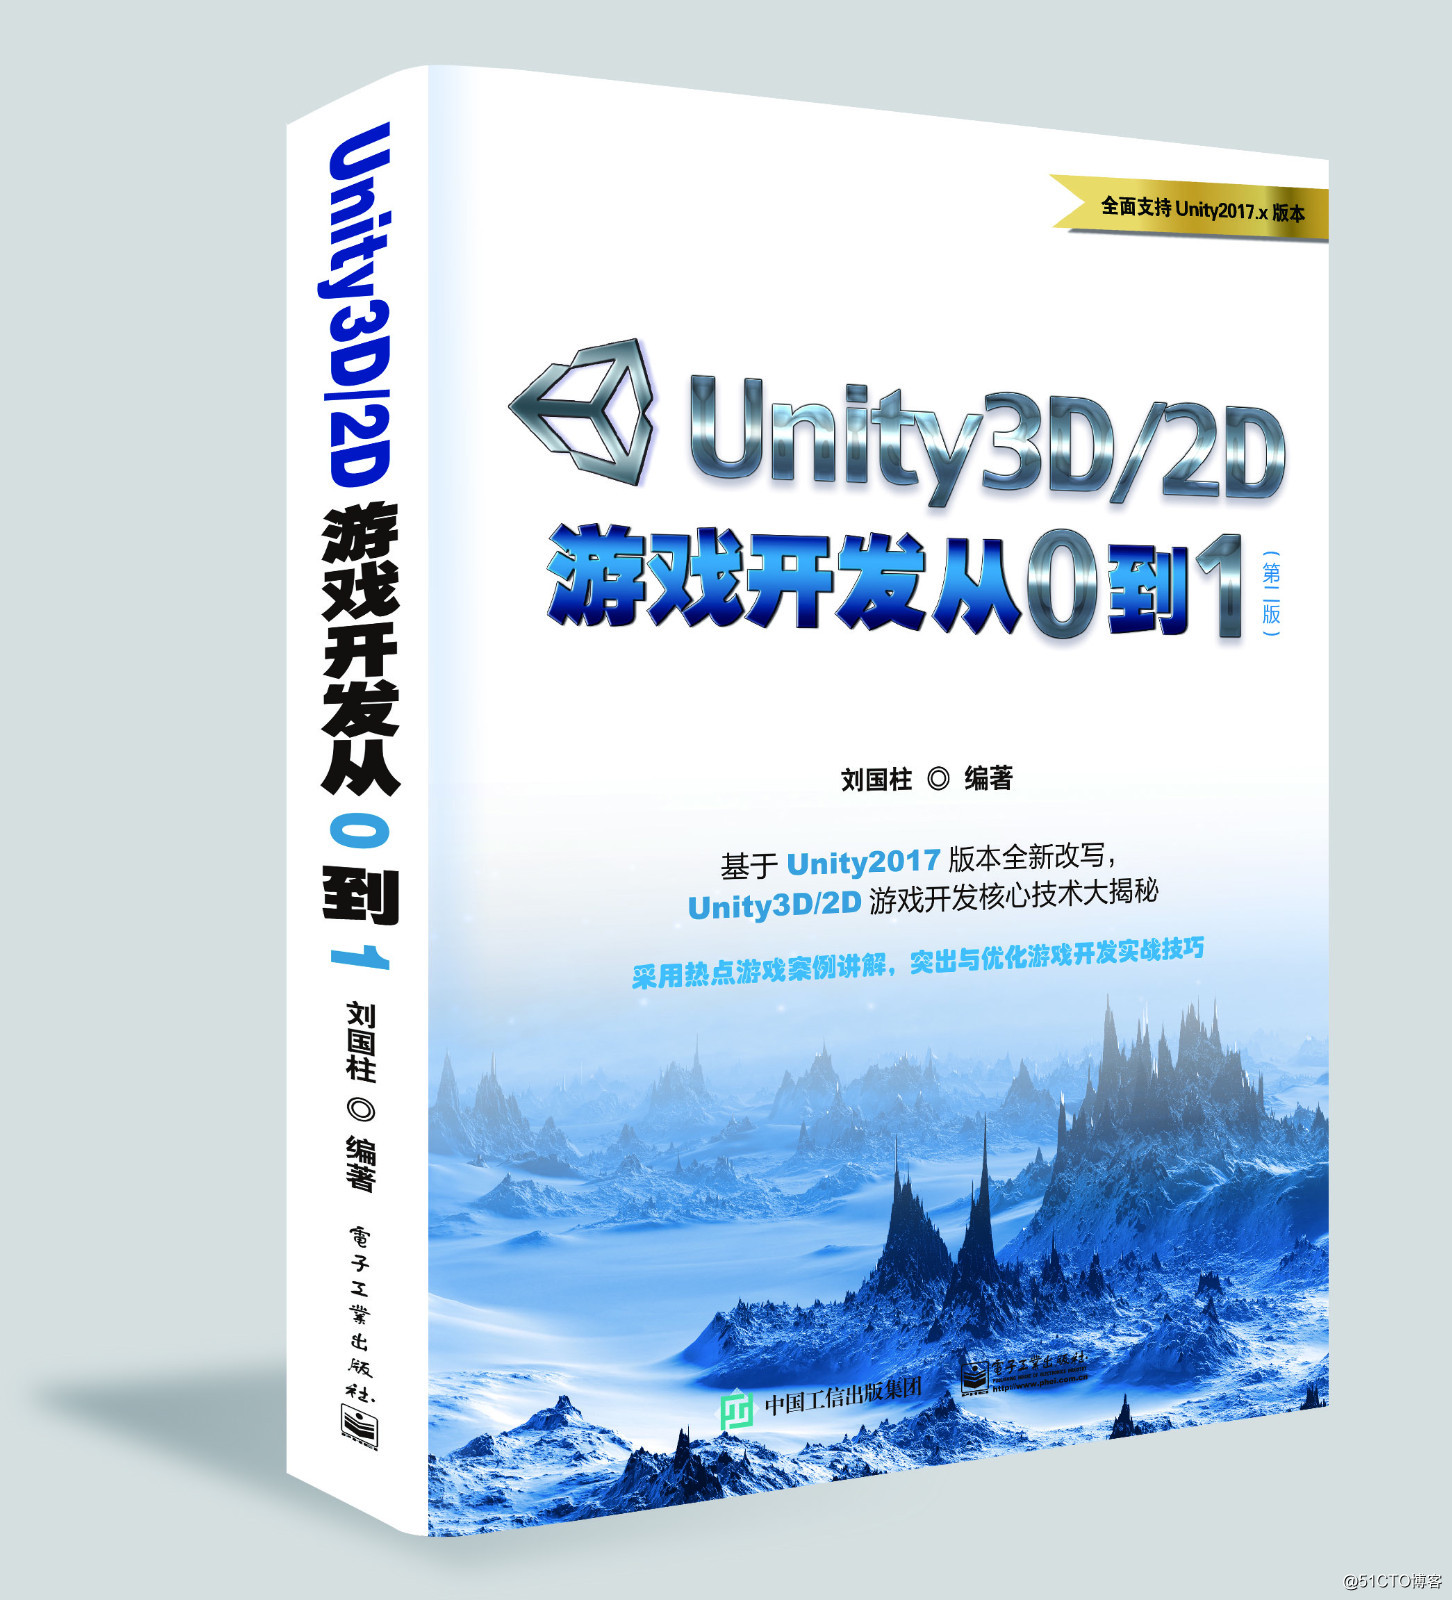 劉國柱- Unity遊戲開發深度學習 系列課程福利大放送